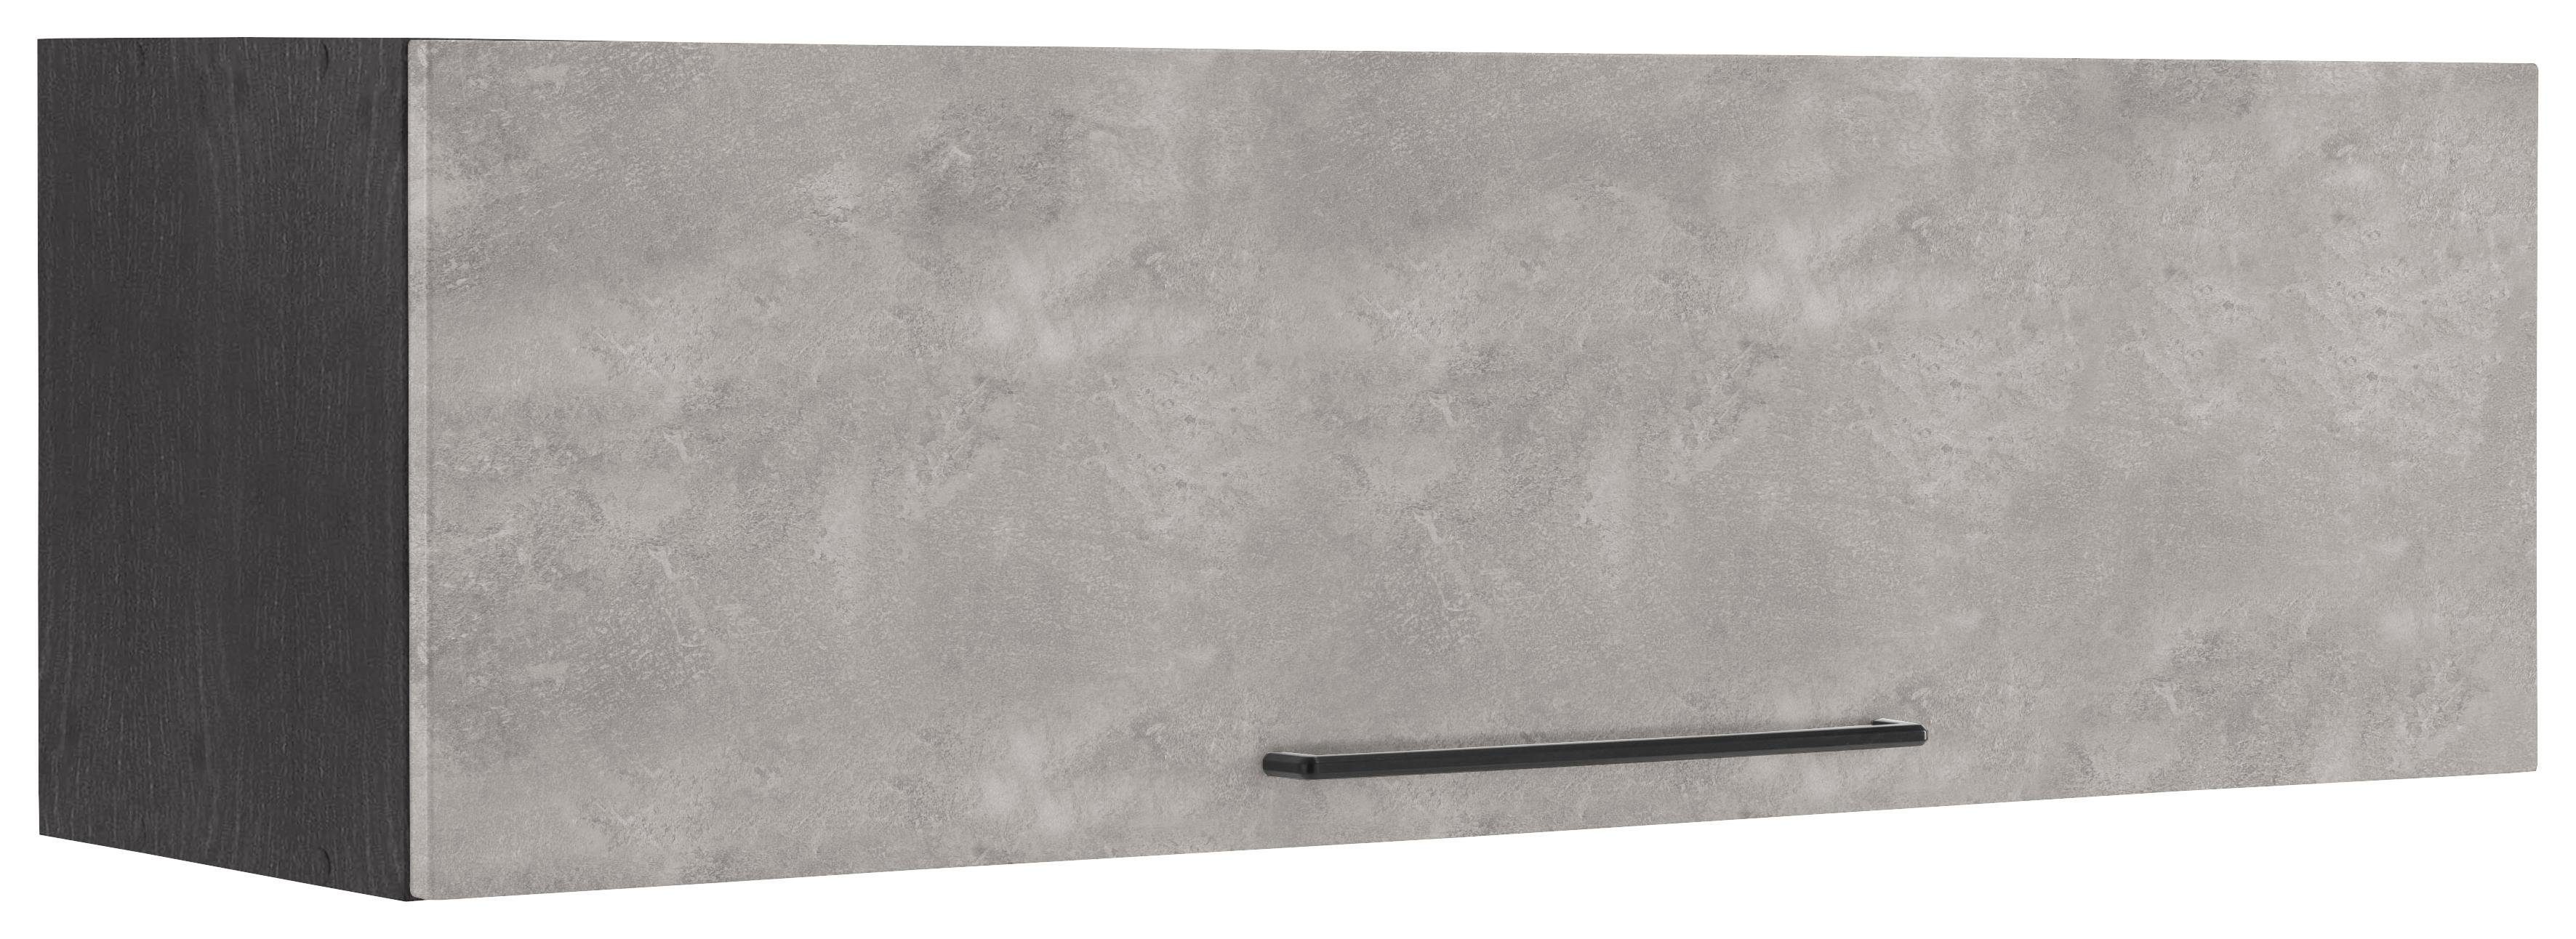 HELD MÖBEL Klapphängeschrank Tulsa MDF grafit Front schwarzer breit, betonfarben 1 cm mit Metallgriff, 110 hell | Klappe